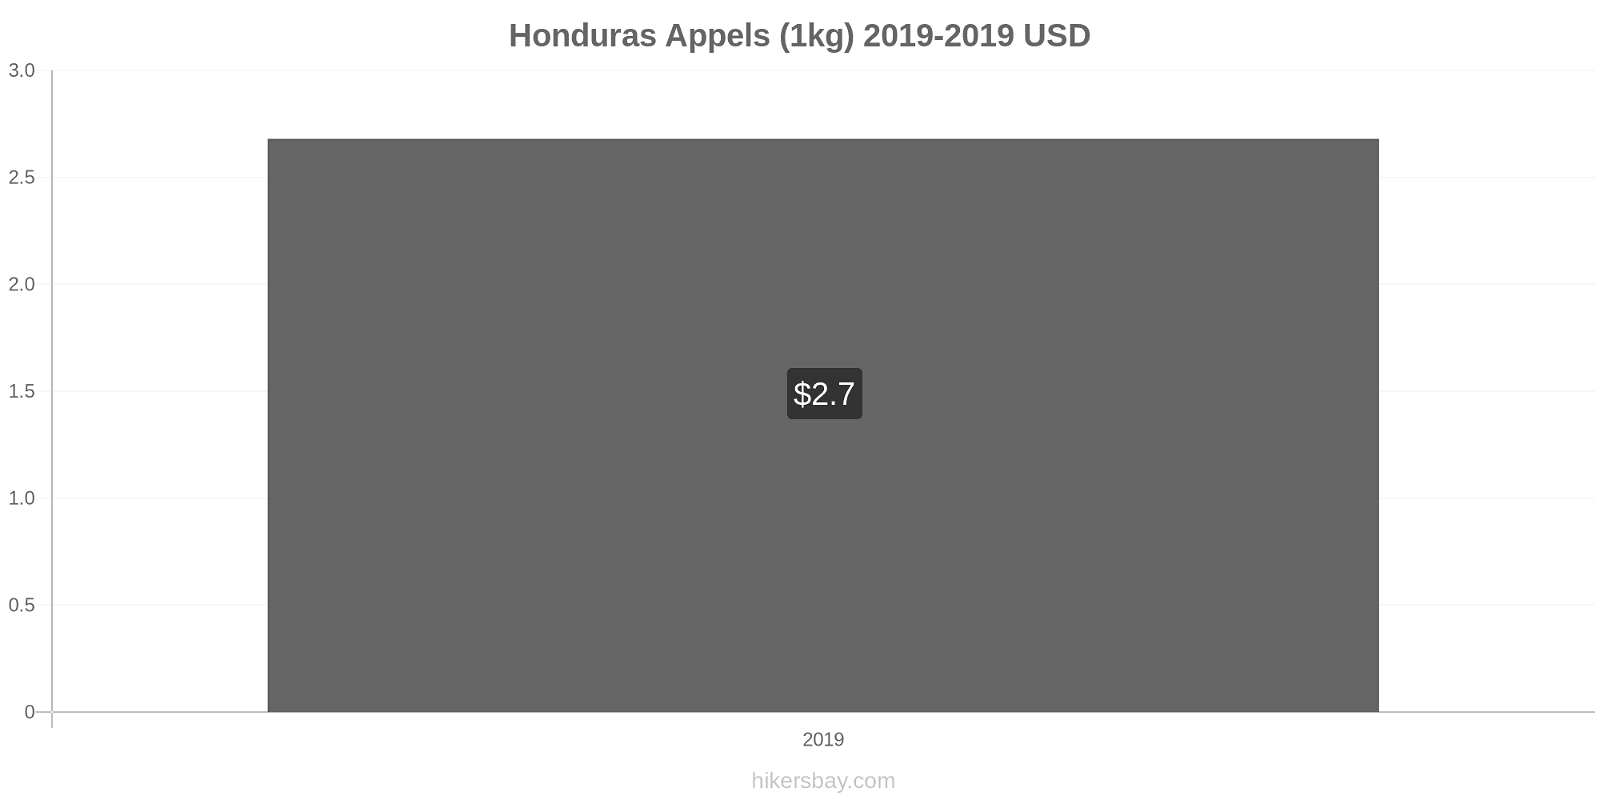 Honduras prijswijzigingen Appels (1kg) hikersbay.com